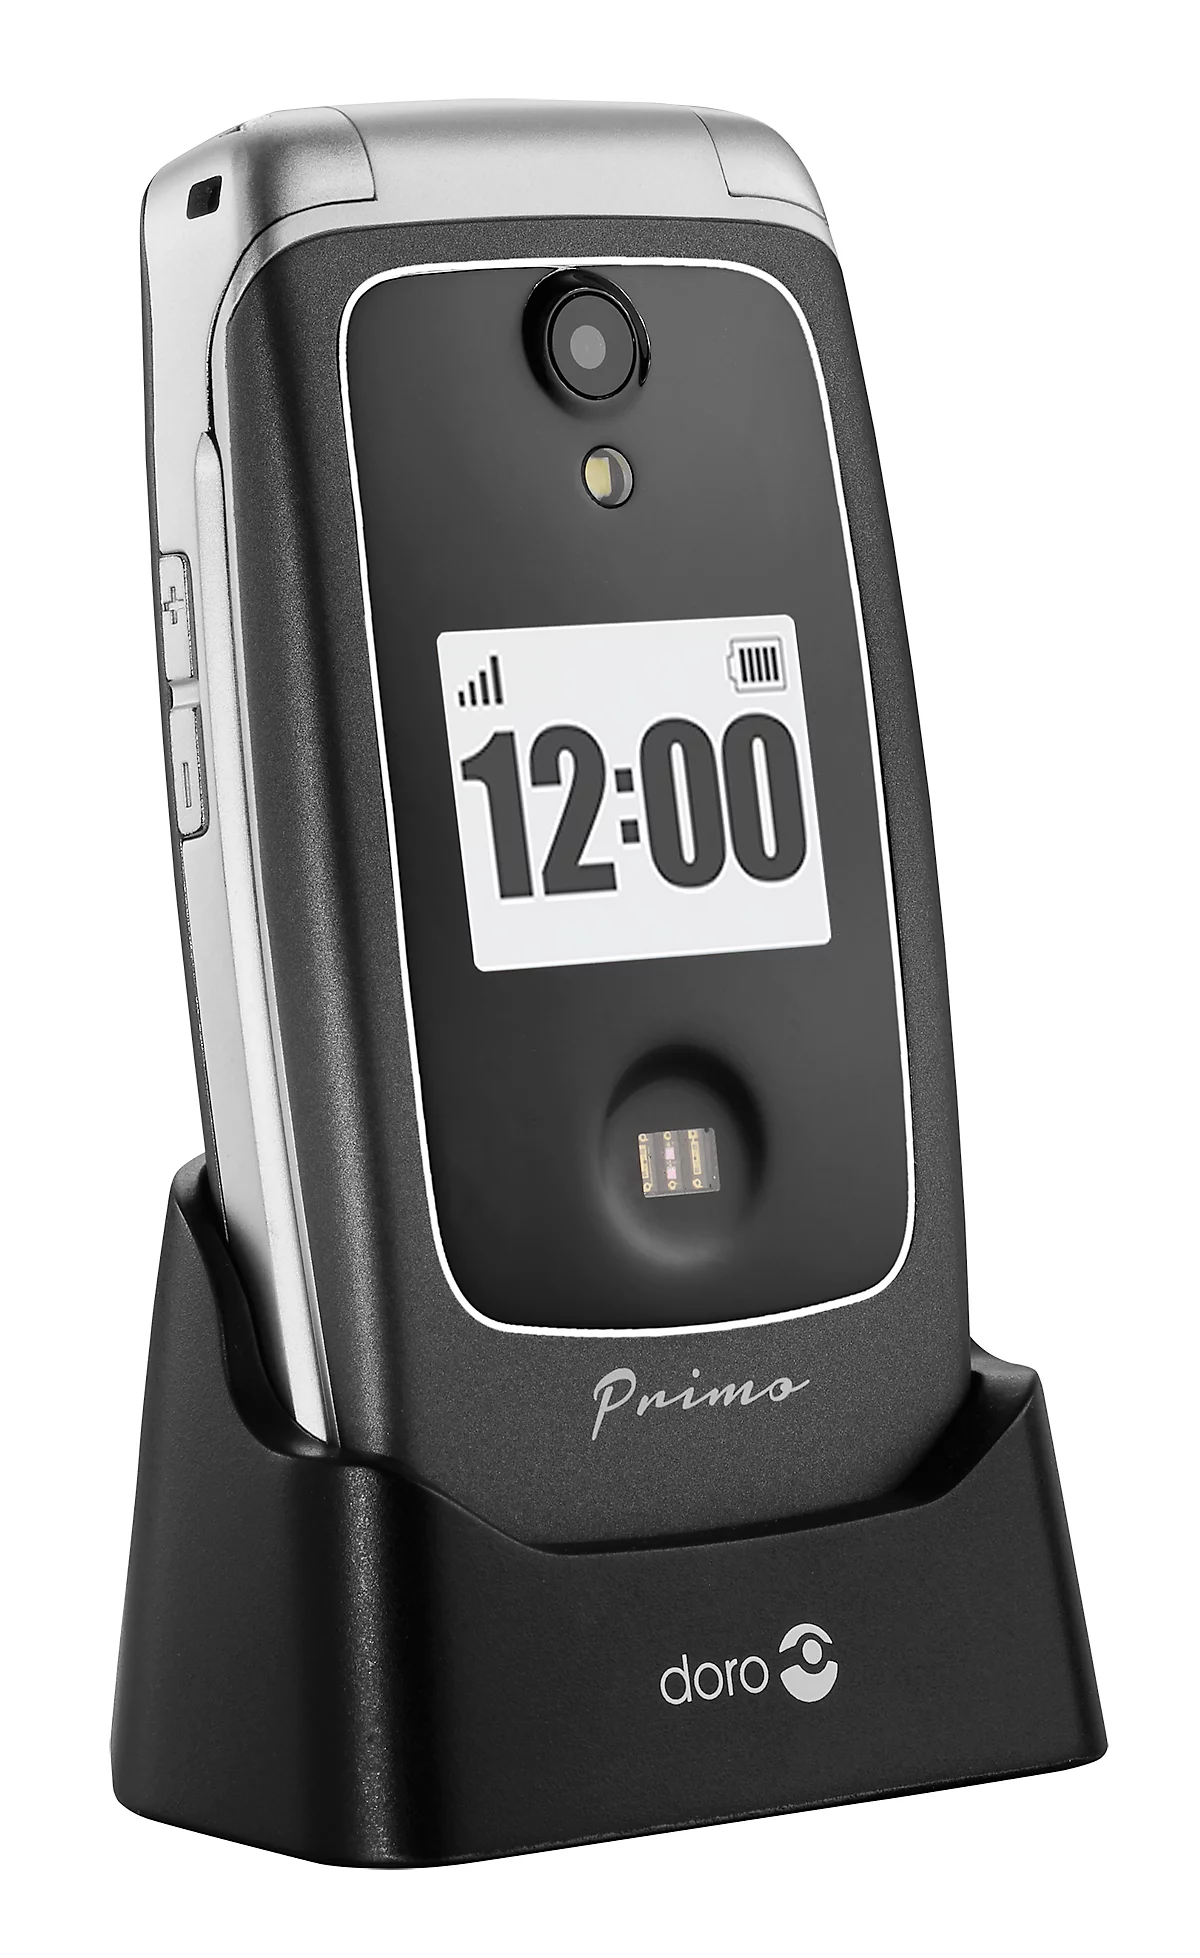 Seniorenhandy Primo™ 418 & Ladestation WiFi/GPS/Bluetooth, Außen Doro, Innen- Ortungsfunktion, Shop Schäfer mit Kamera, | SOS-Taste, Kardiomessung, by Sturzsensor, günstig kaufen